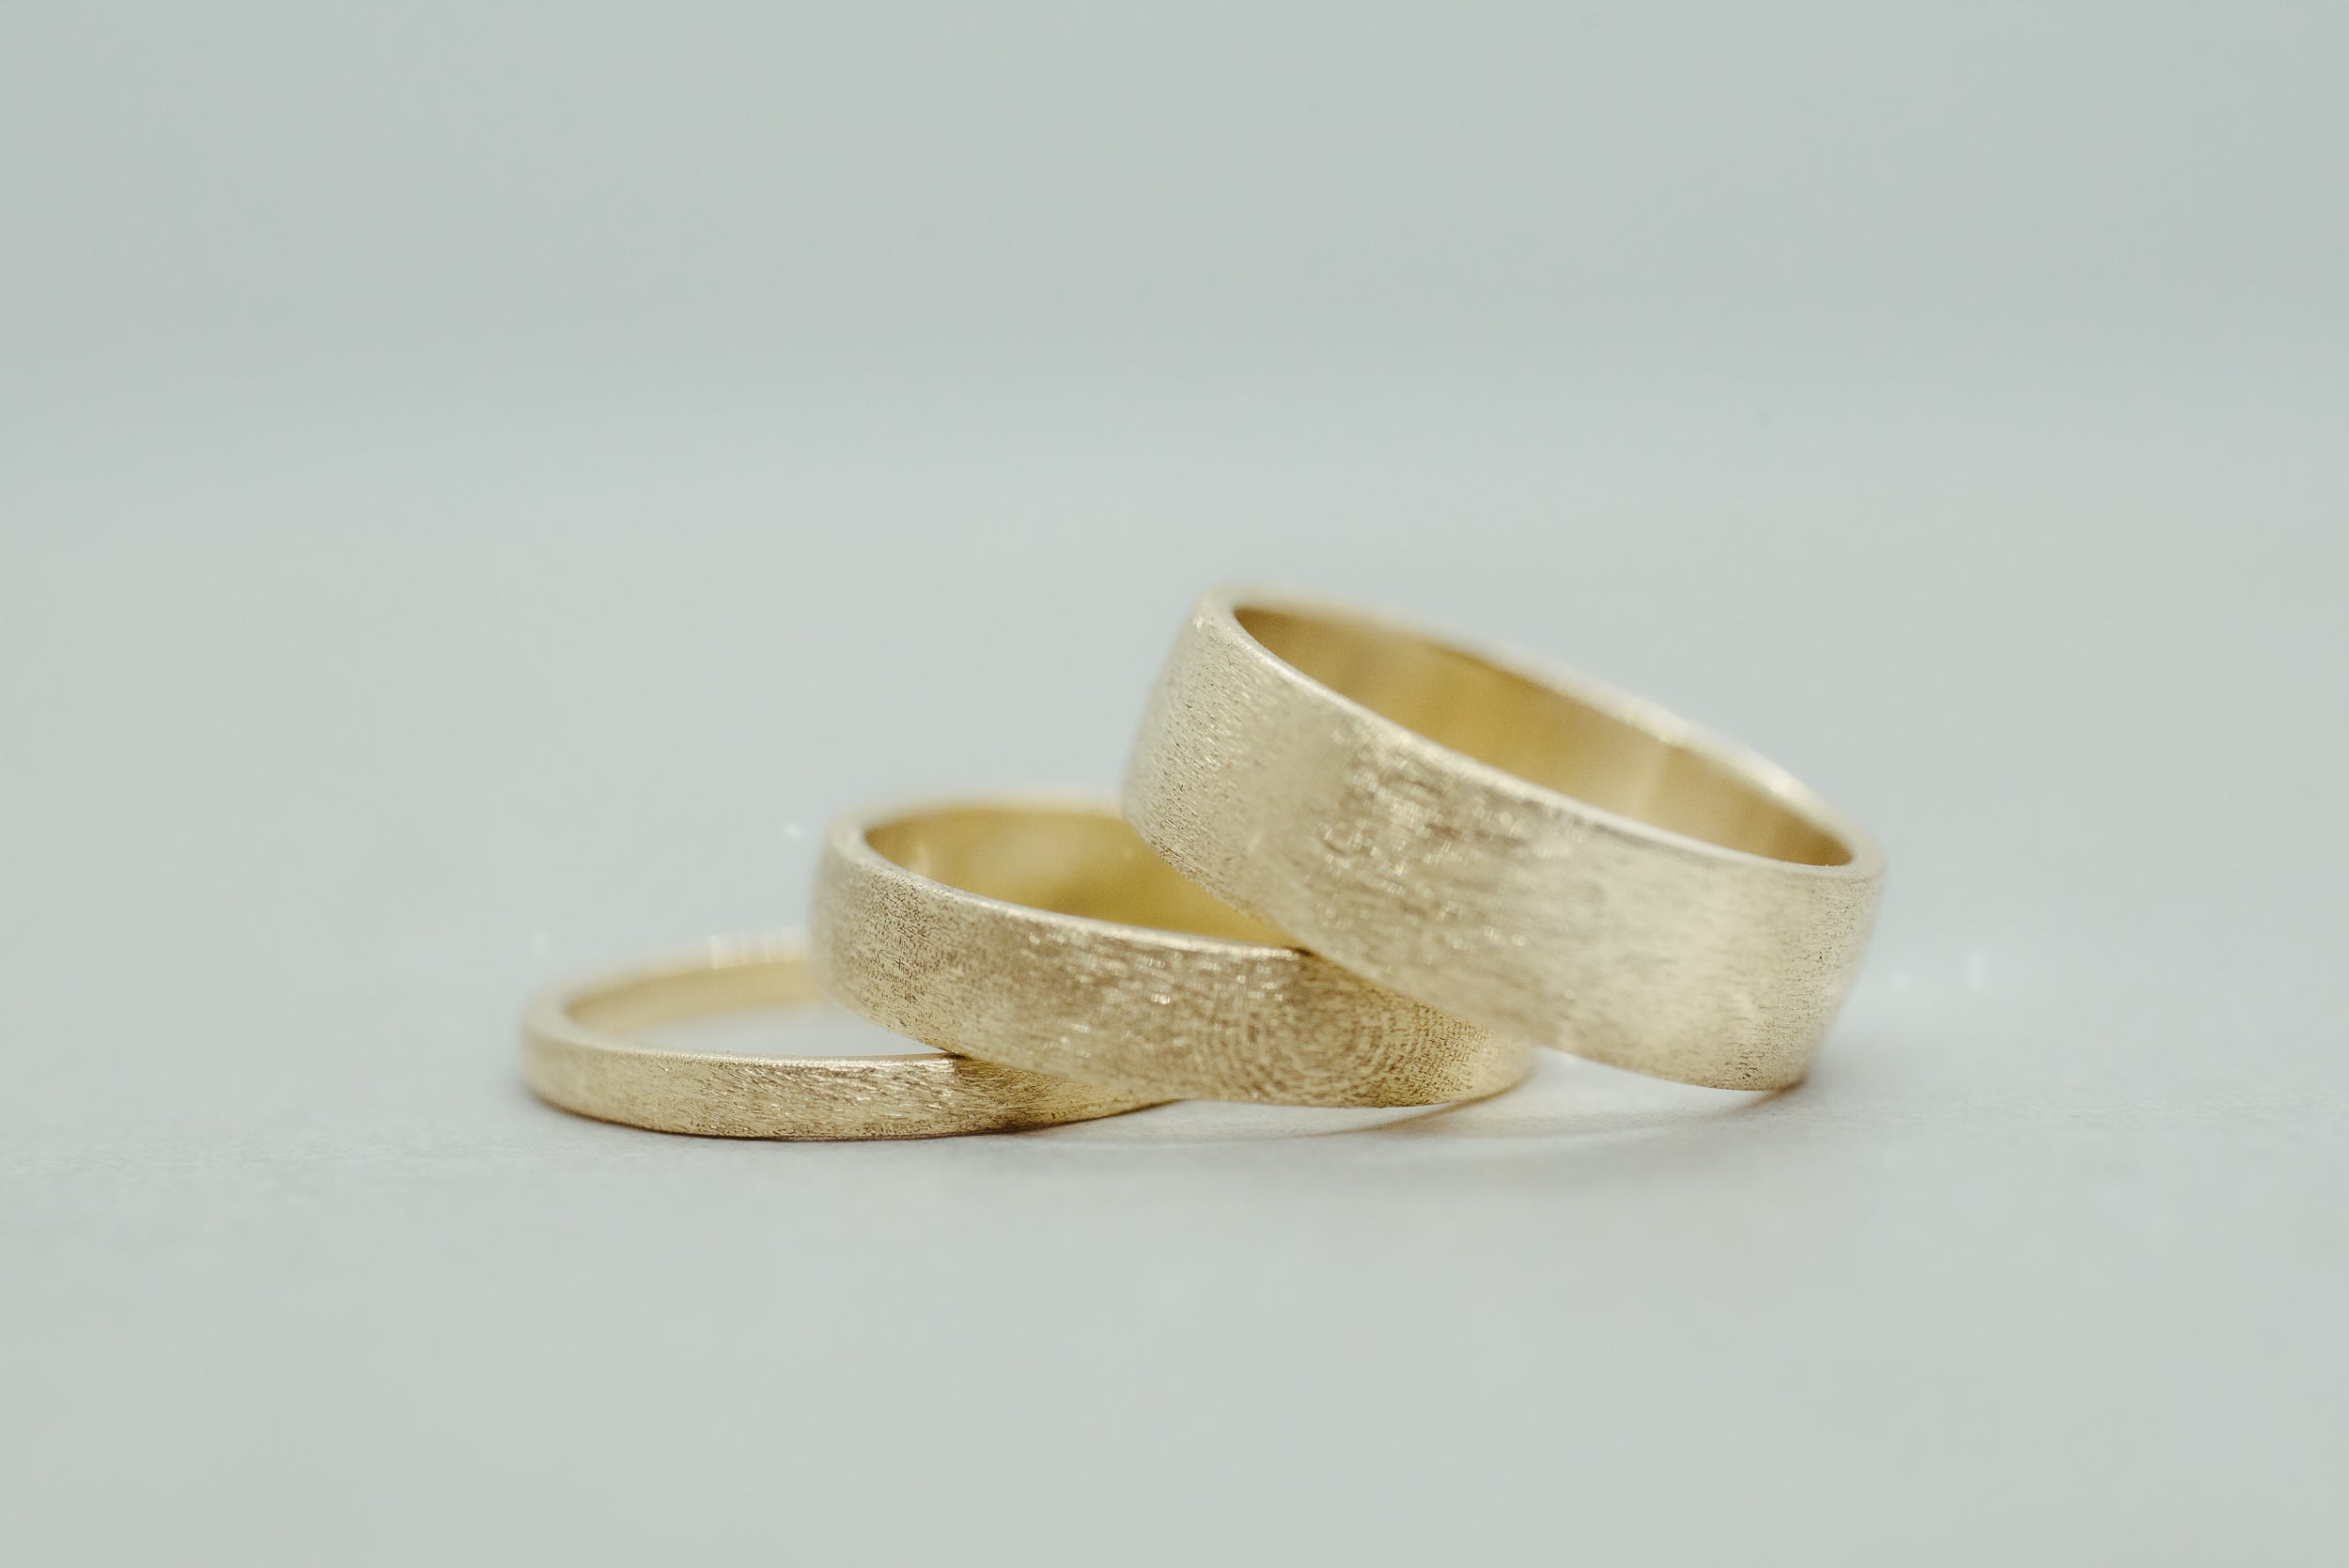 Brushed Wedding Band 6mm - Lelya - bespoke engagement and wedding rings made in Scotland, UK